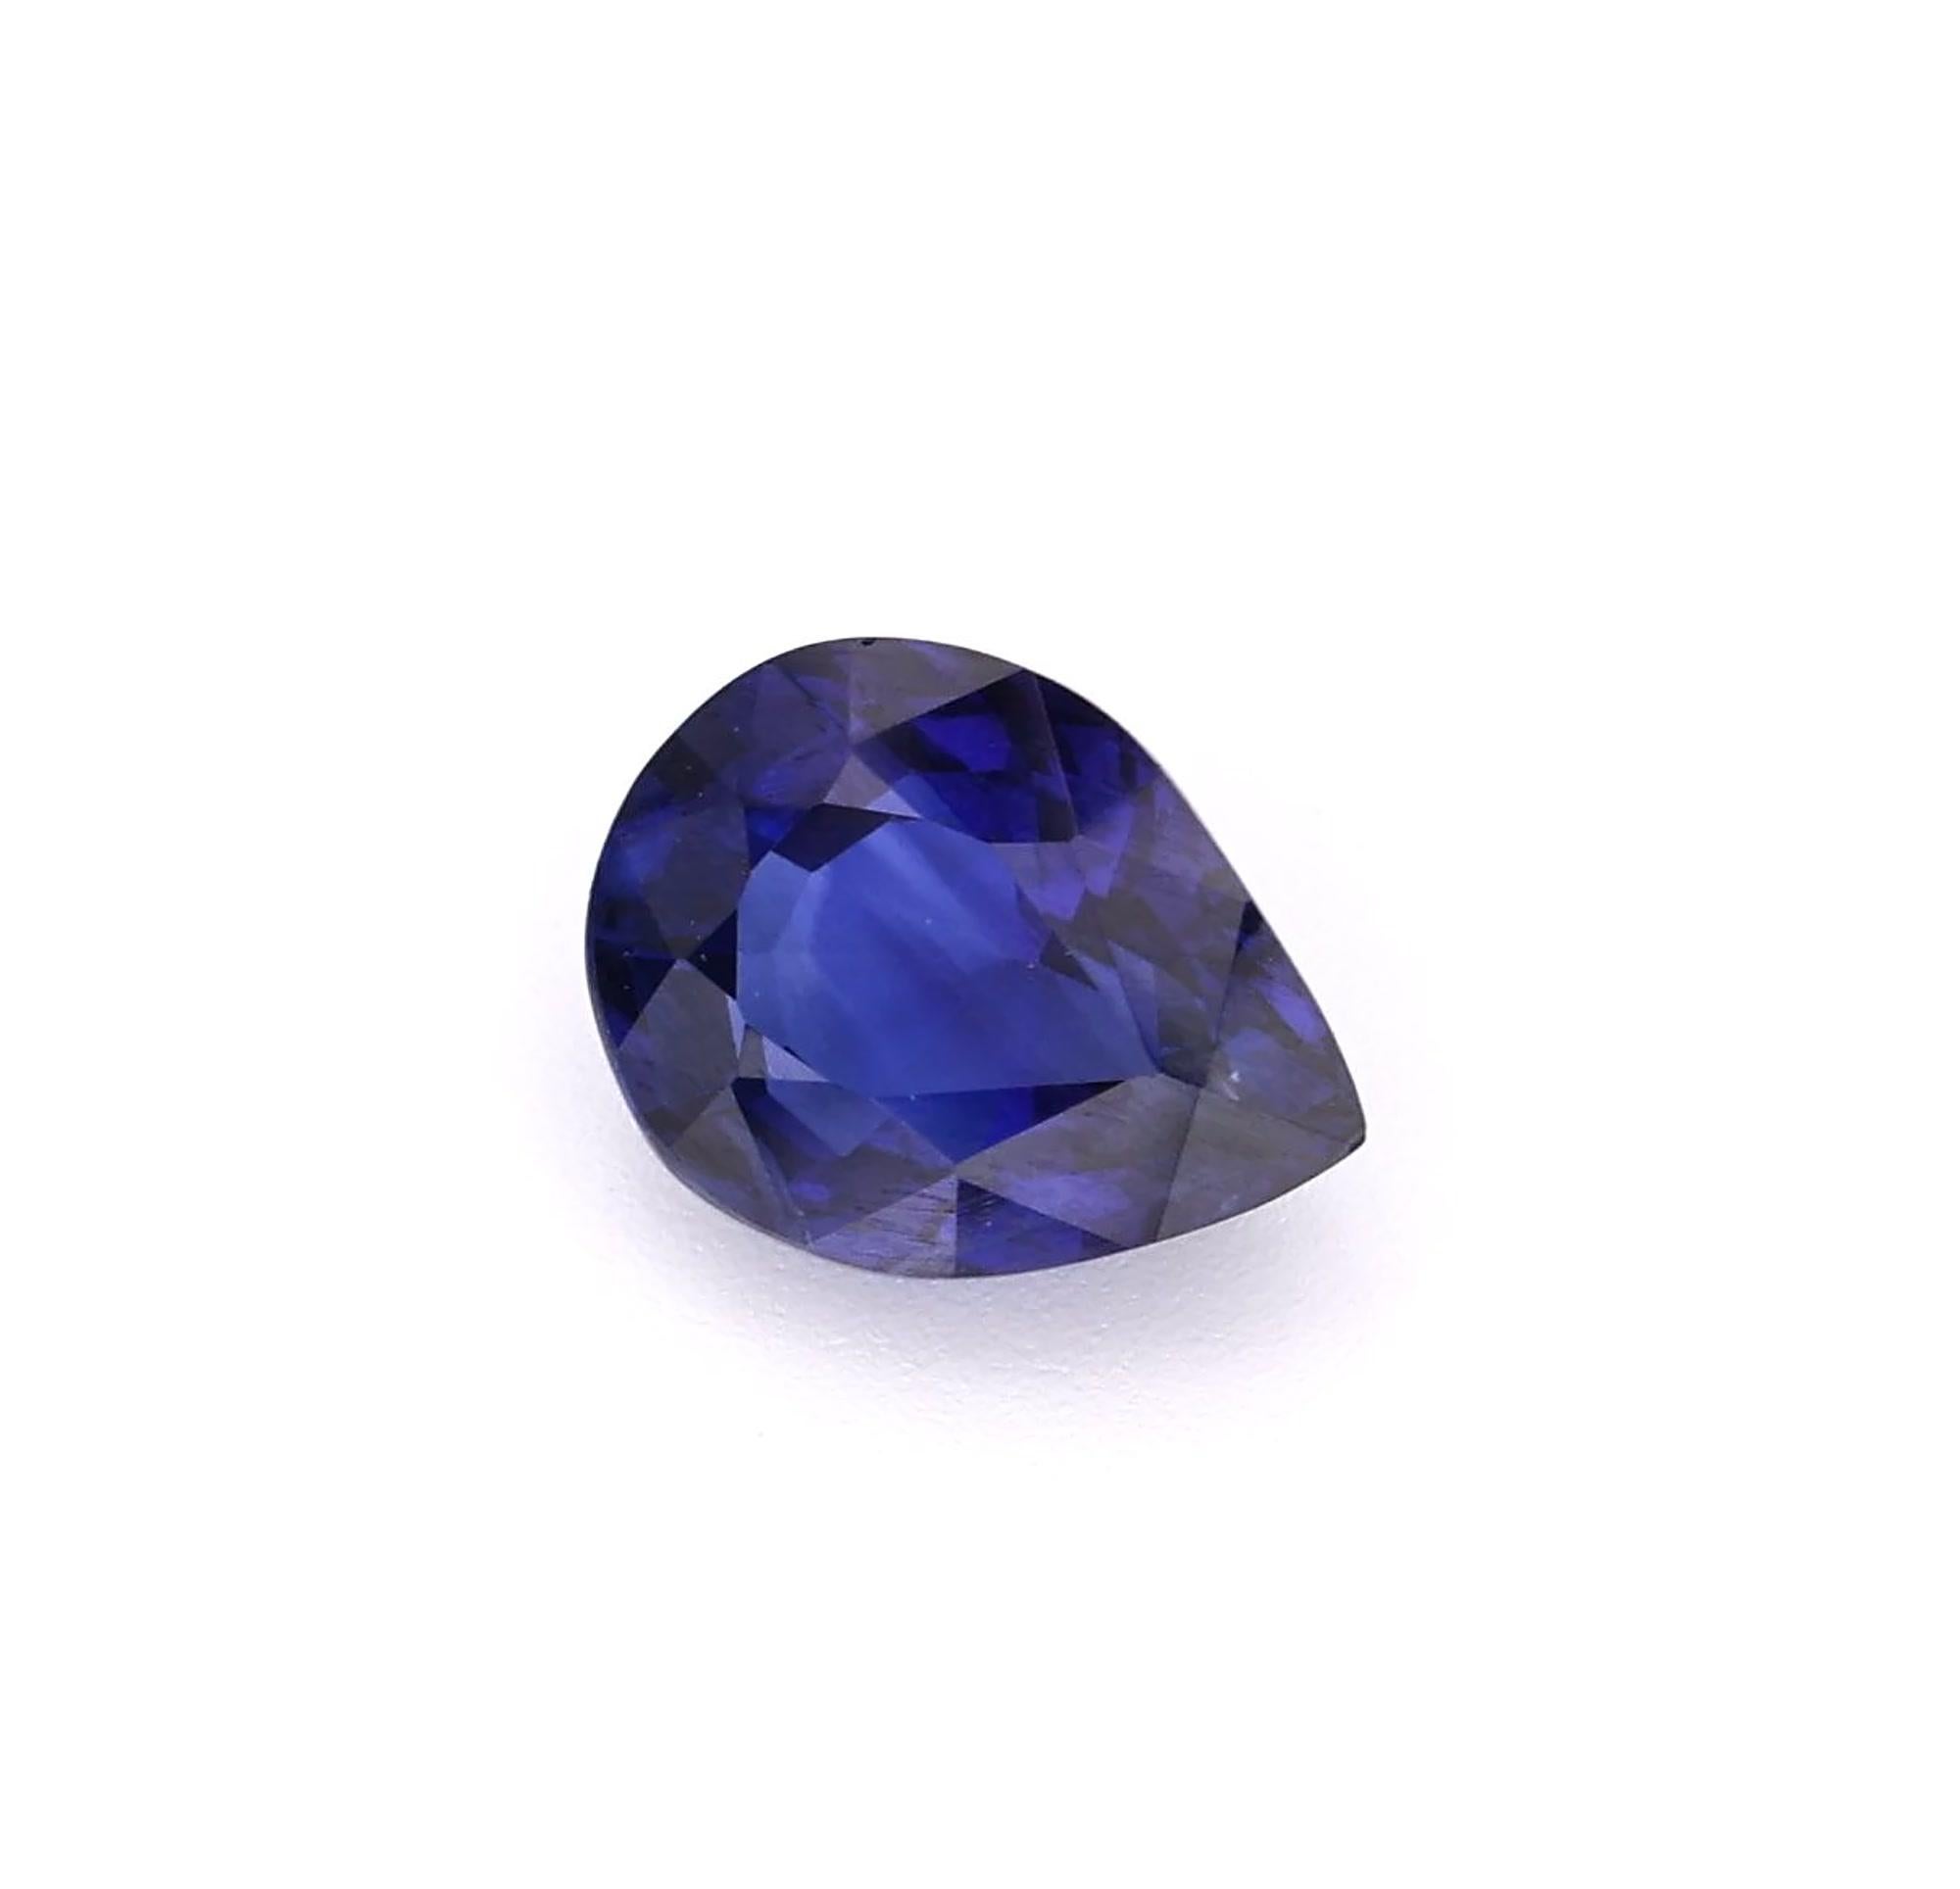 Natürlicher Blauer Saphir Königsblau Farbe Birnenform. Dieser exquisite Edelstein stammt aus Ceylon (Sri Lanka), das für die Herstellung von Steinen außergewöhnlicher Qualität bekannt ist. Mit seiner innerlich makellosen Klarheit.

- • Sorte: Blauer